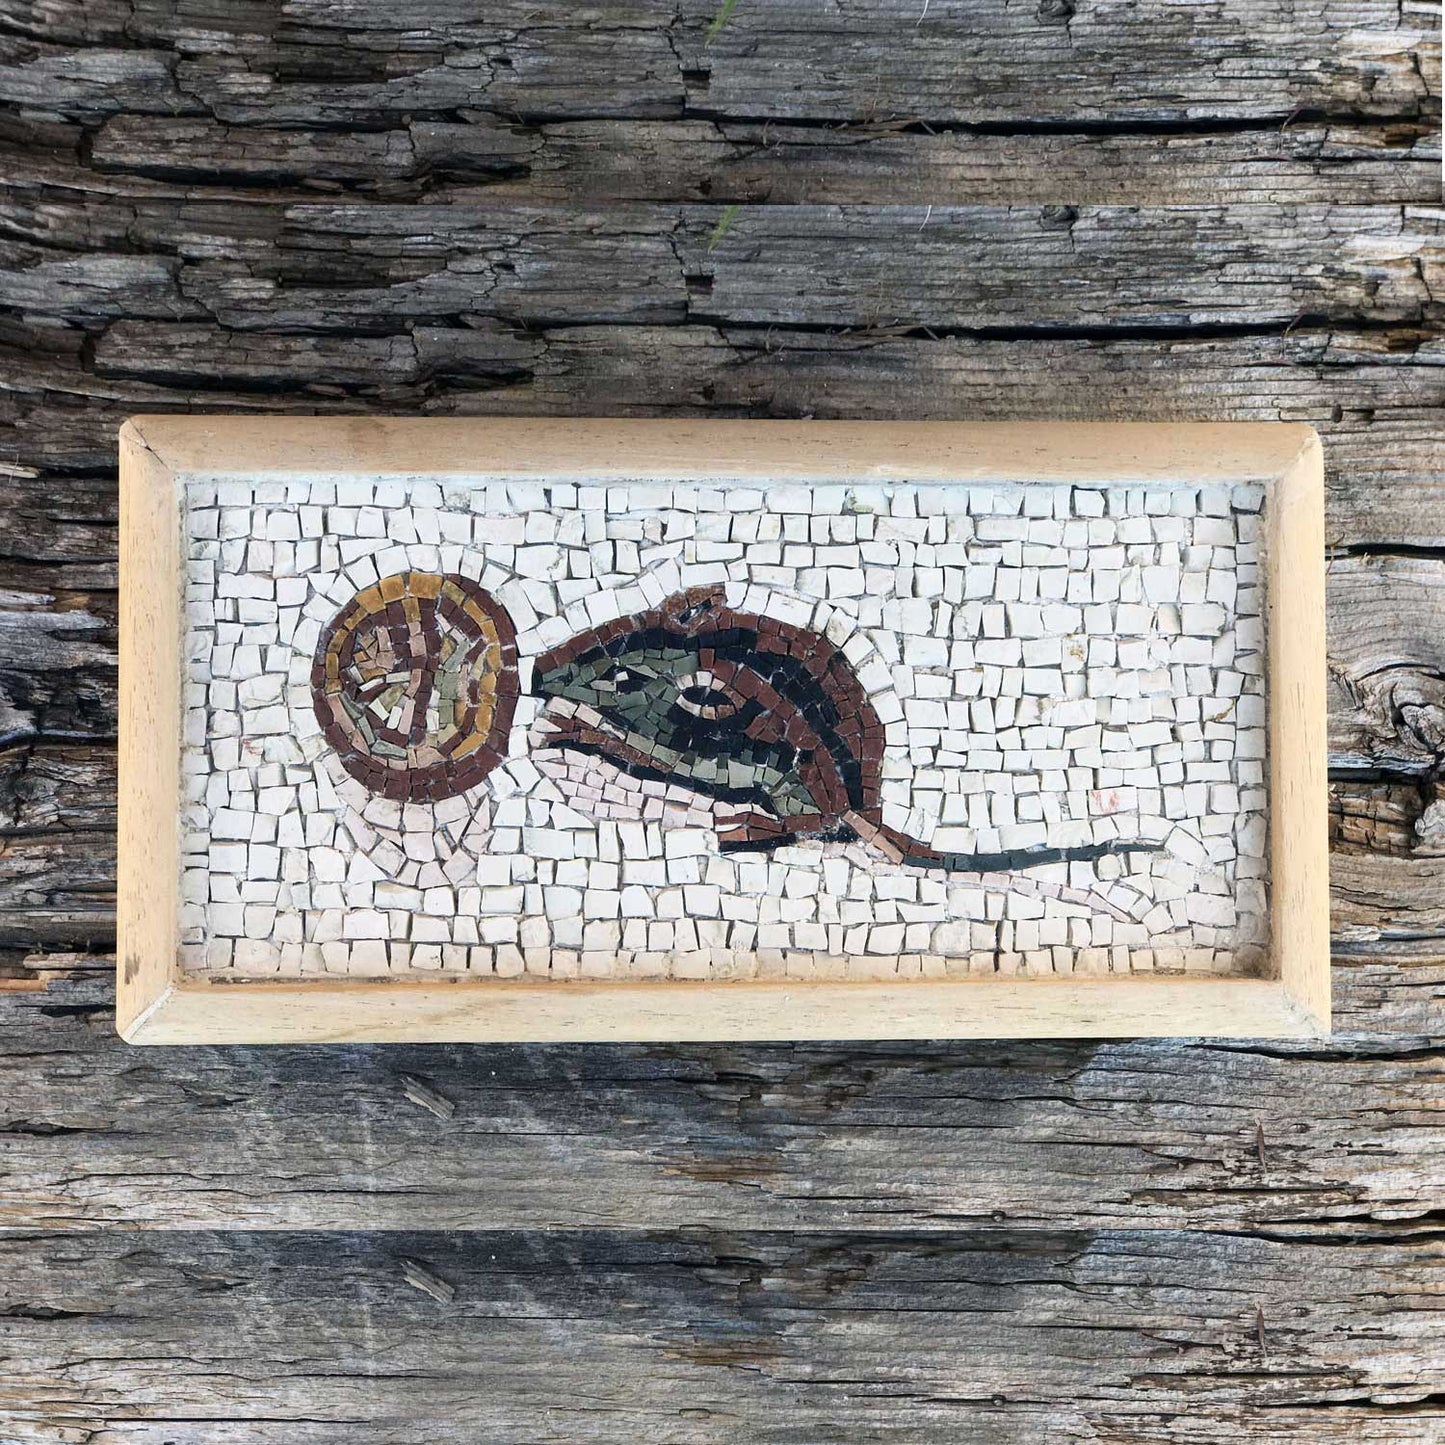 Mosaico realizzacon com marmo colorato e banco raffigurante un topolino romano